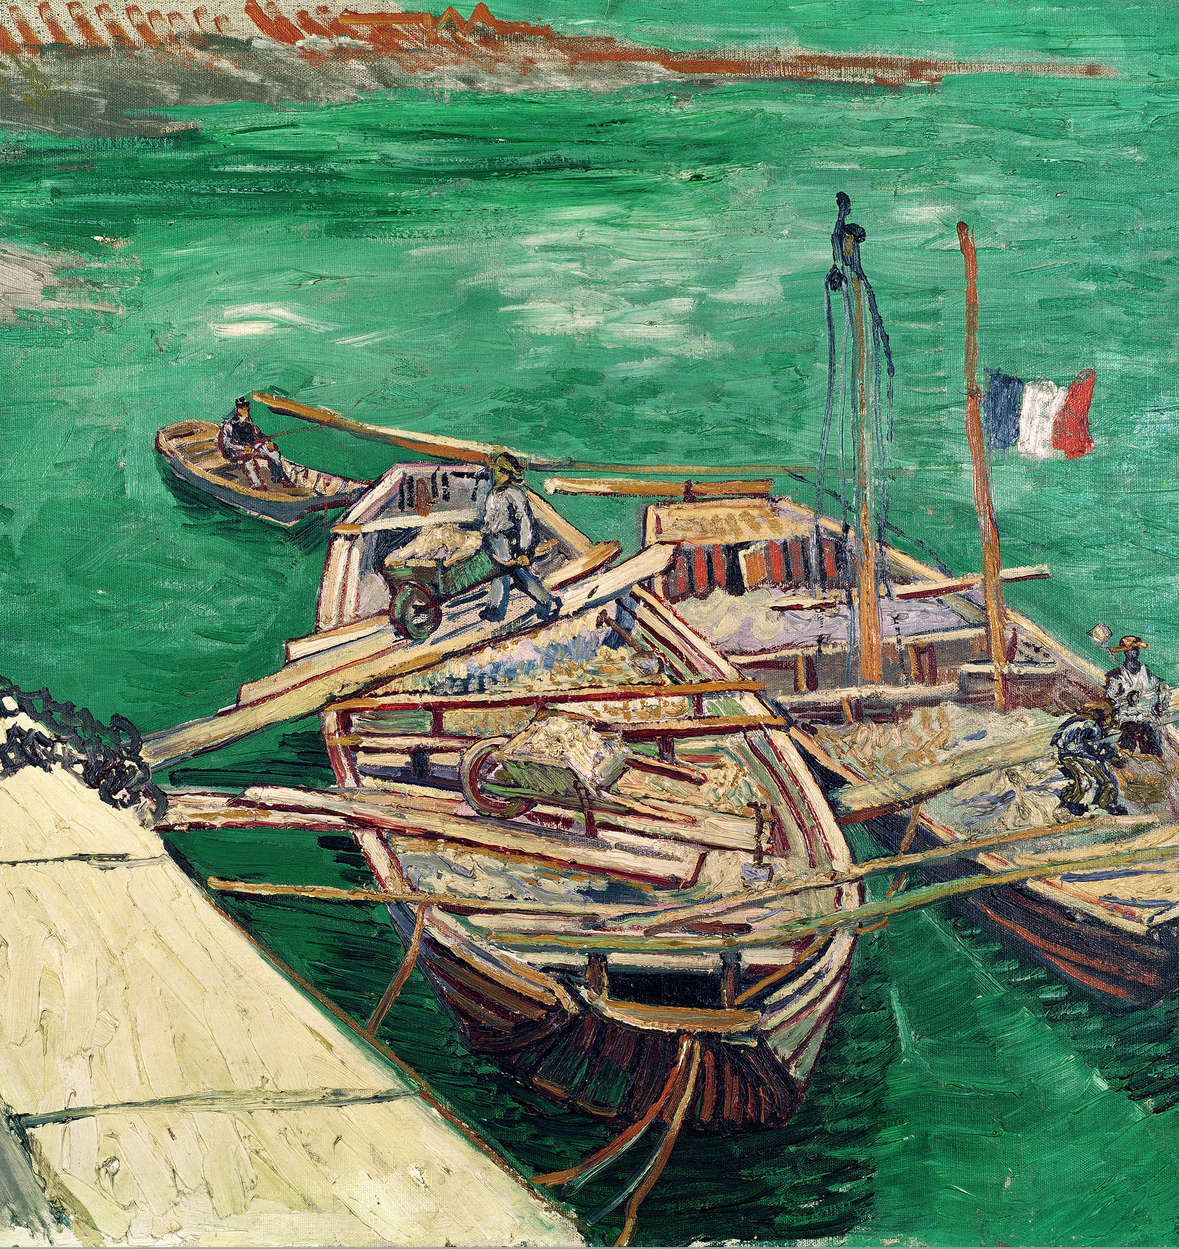             Landingspier met boten" muurschildering van Vincent van Gogh
        